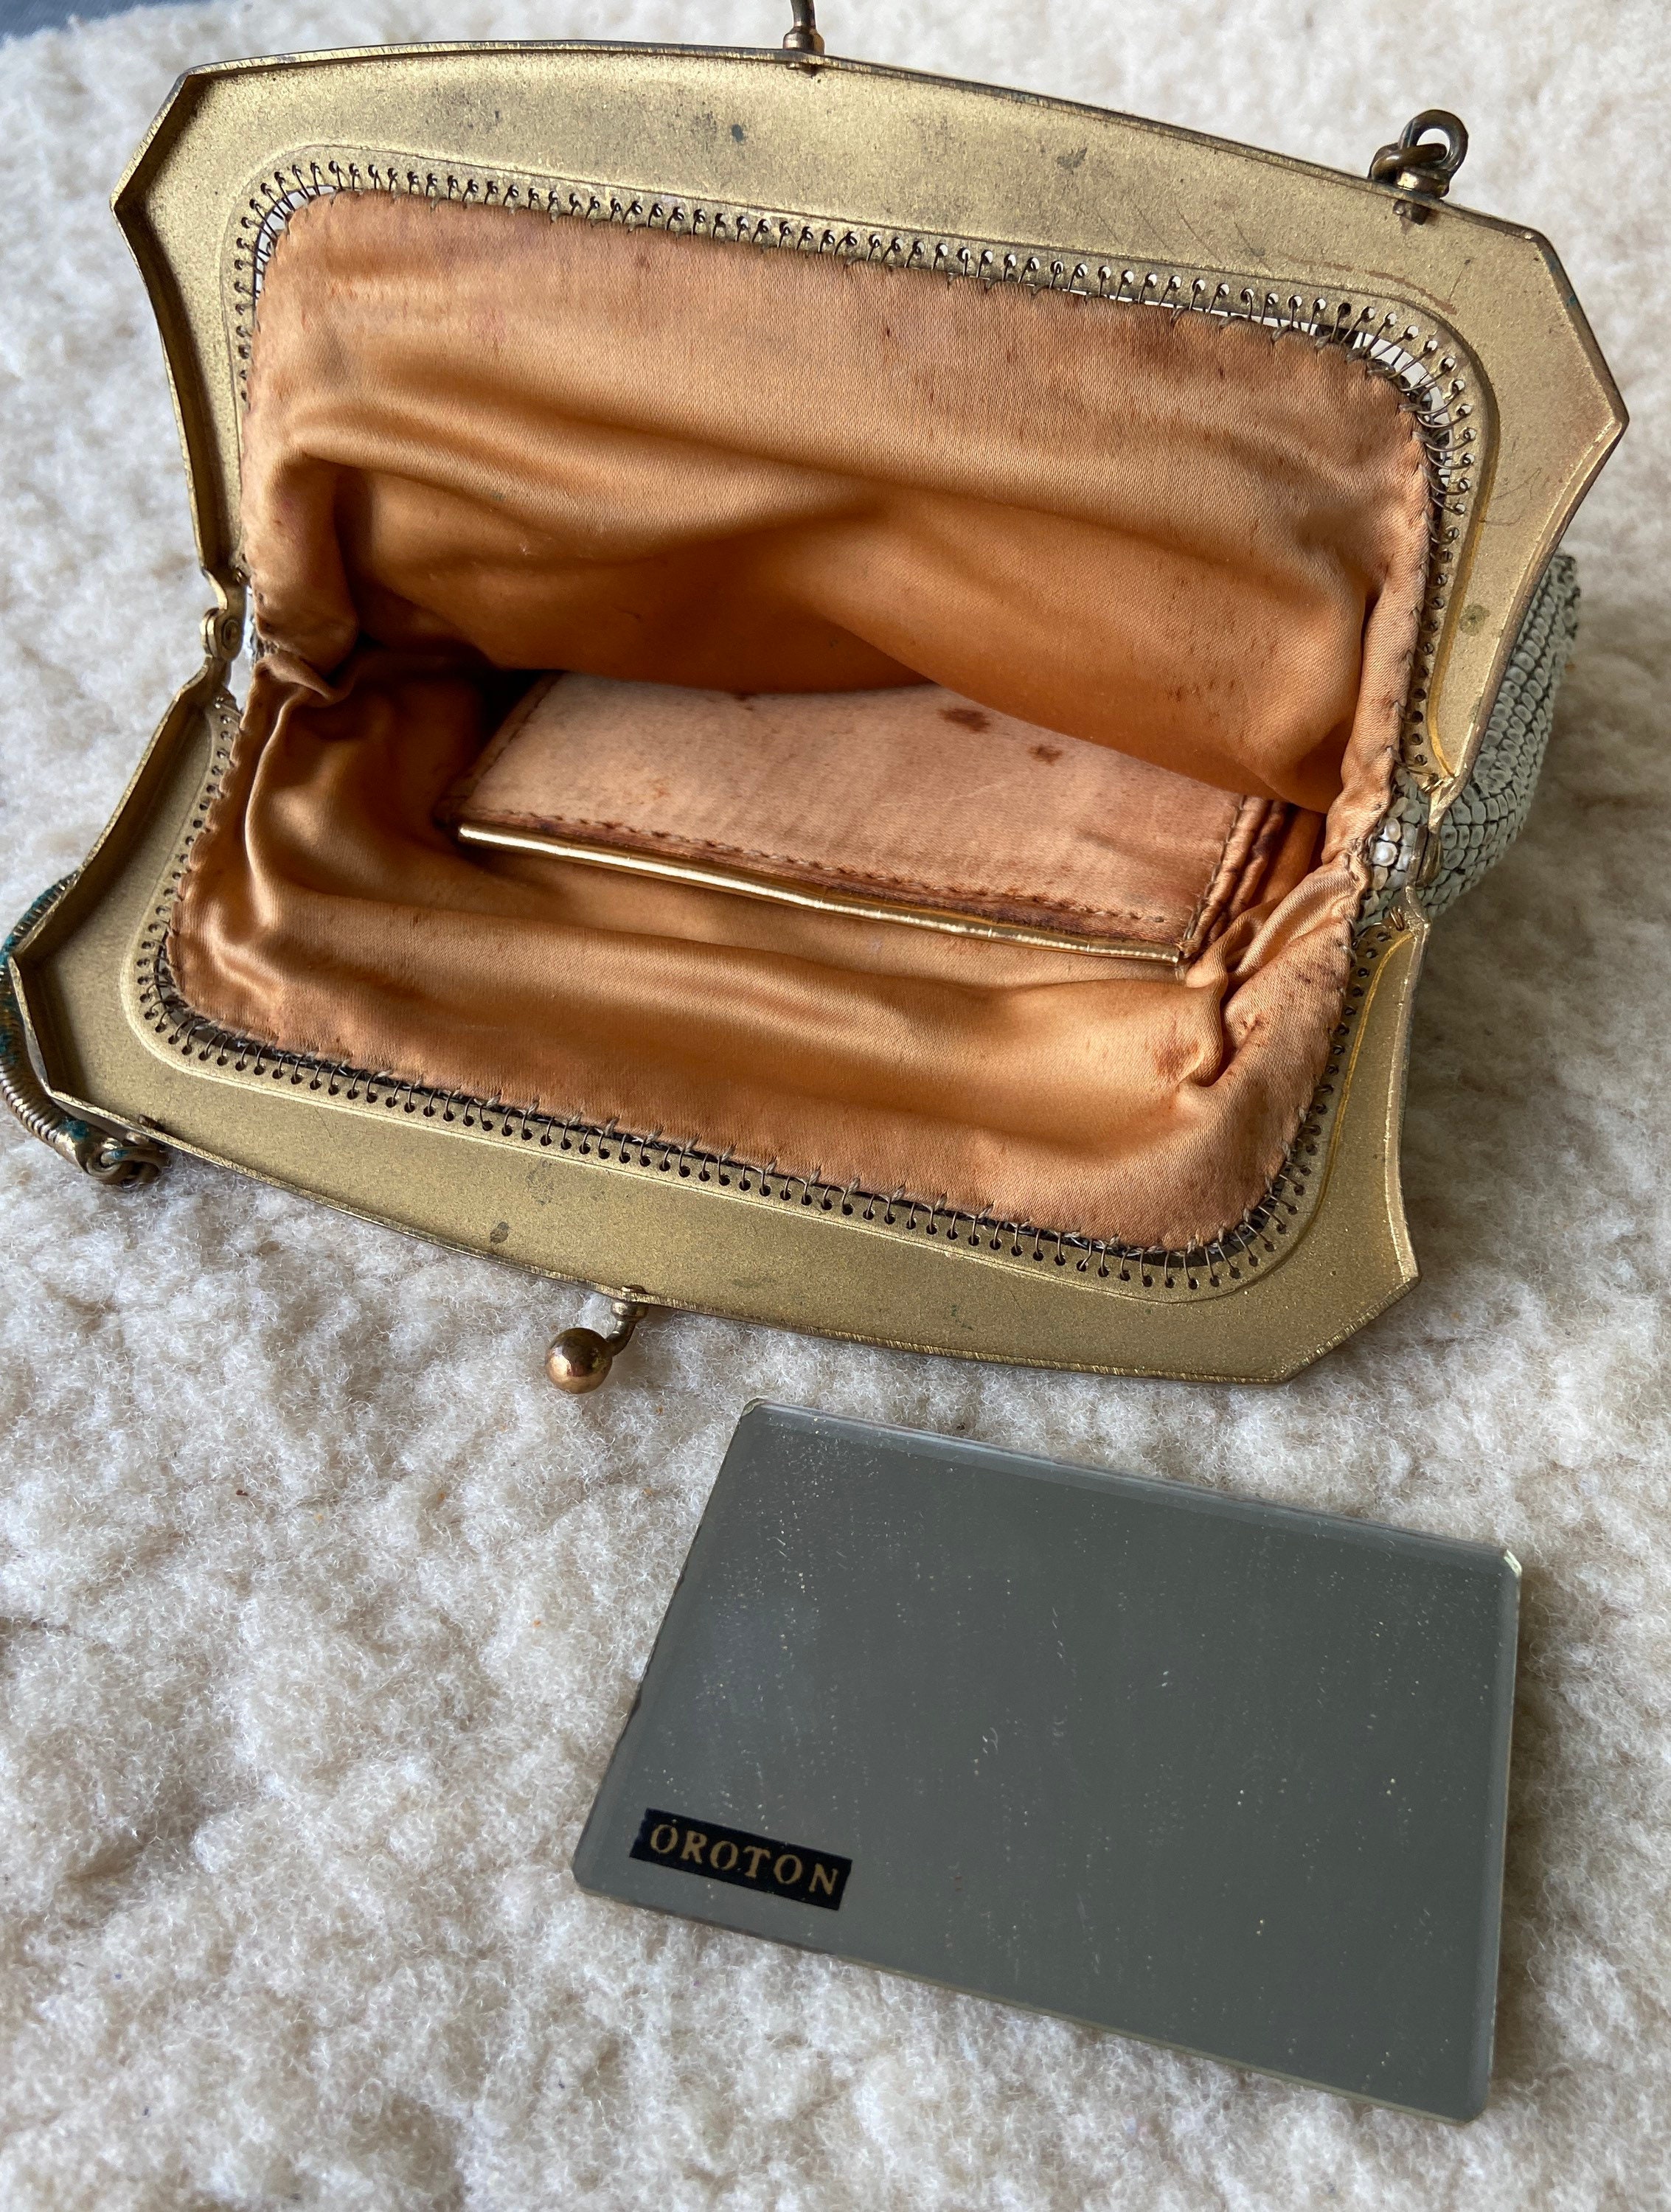 Vintage OROTON Clutch Handbag With Rose Decals | Etsy